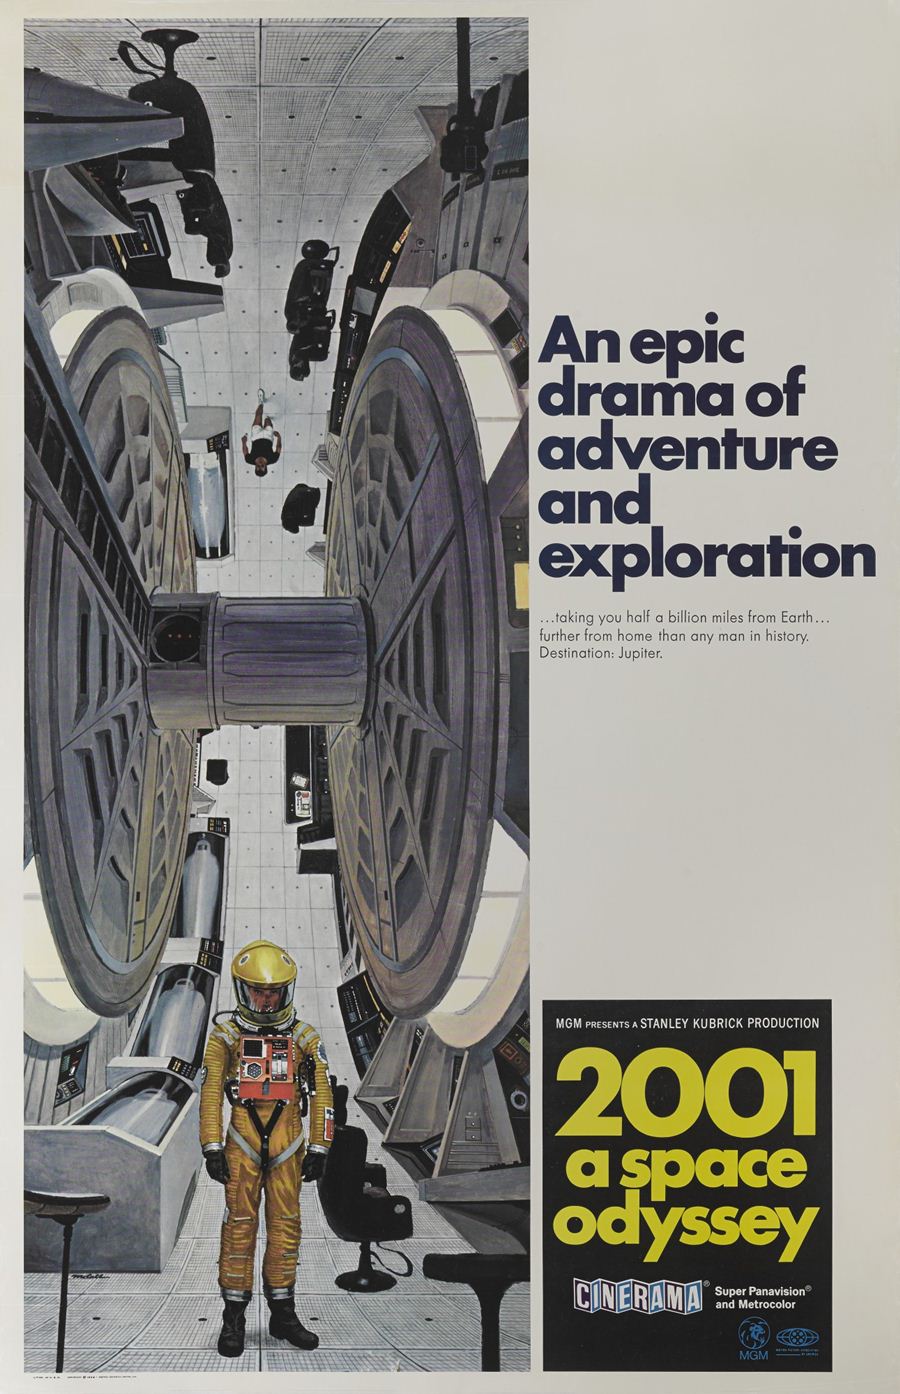 โปสเตอร์ 2001 a space odyssey ปี 1968 ผลิตในอเมริกา ประเมินราคาประมูลสูงสุด 9,000 ปอนด์ หรือราว 3.3 แสนบาท 